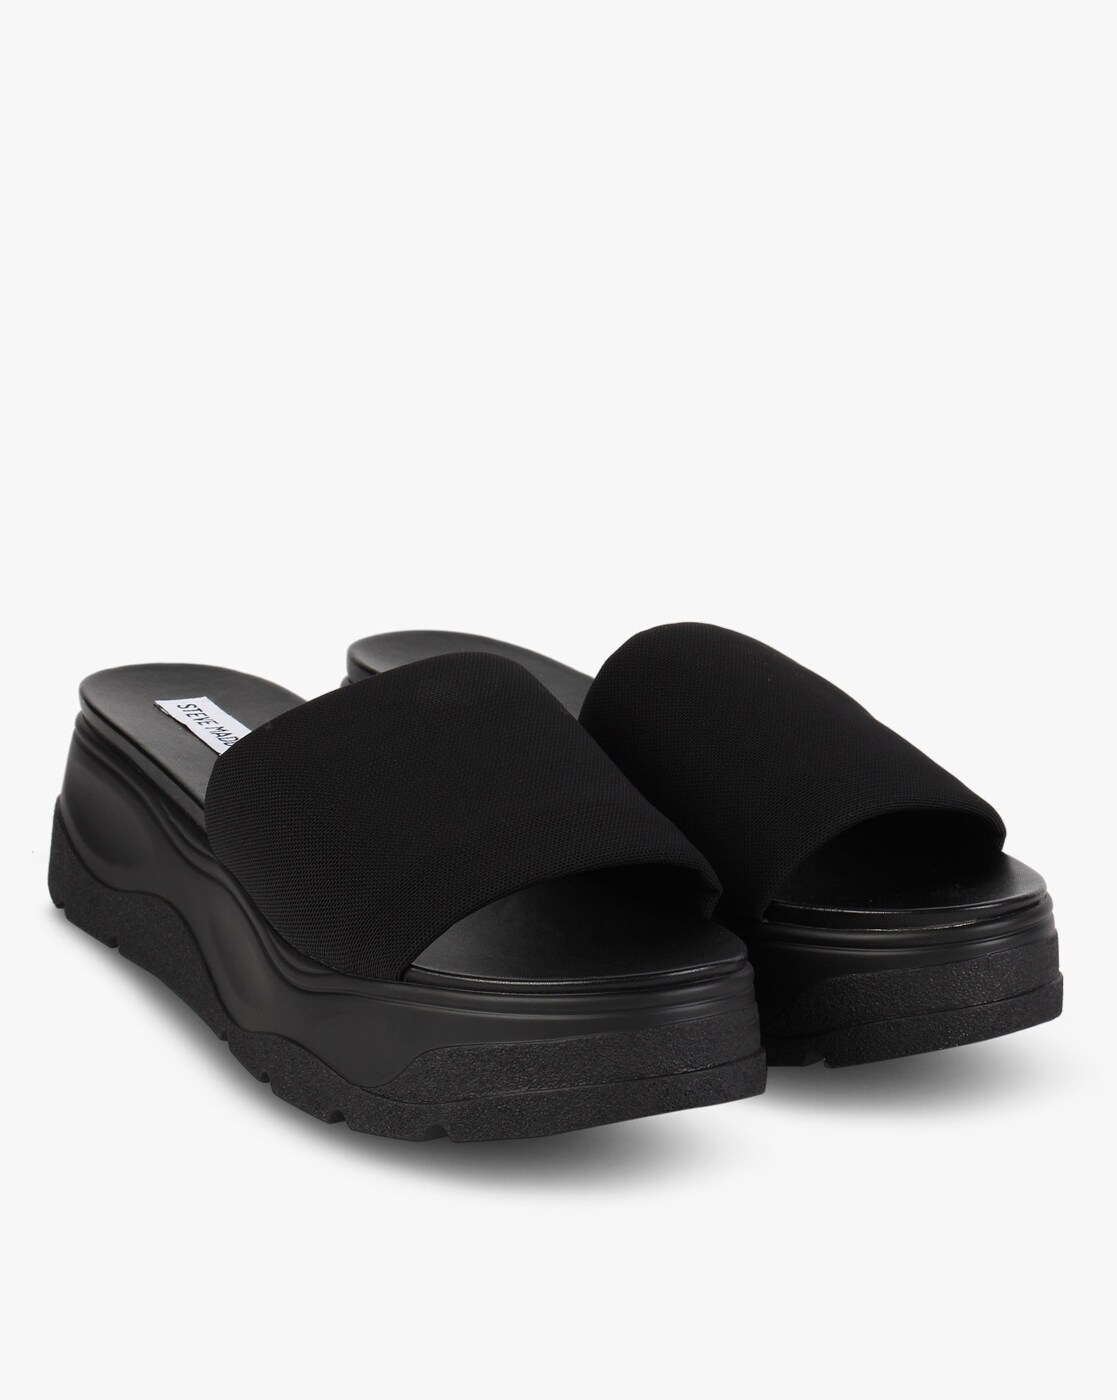 platform slip on sandals